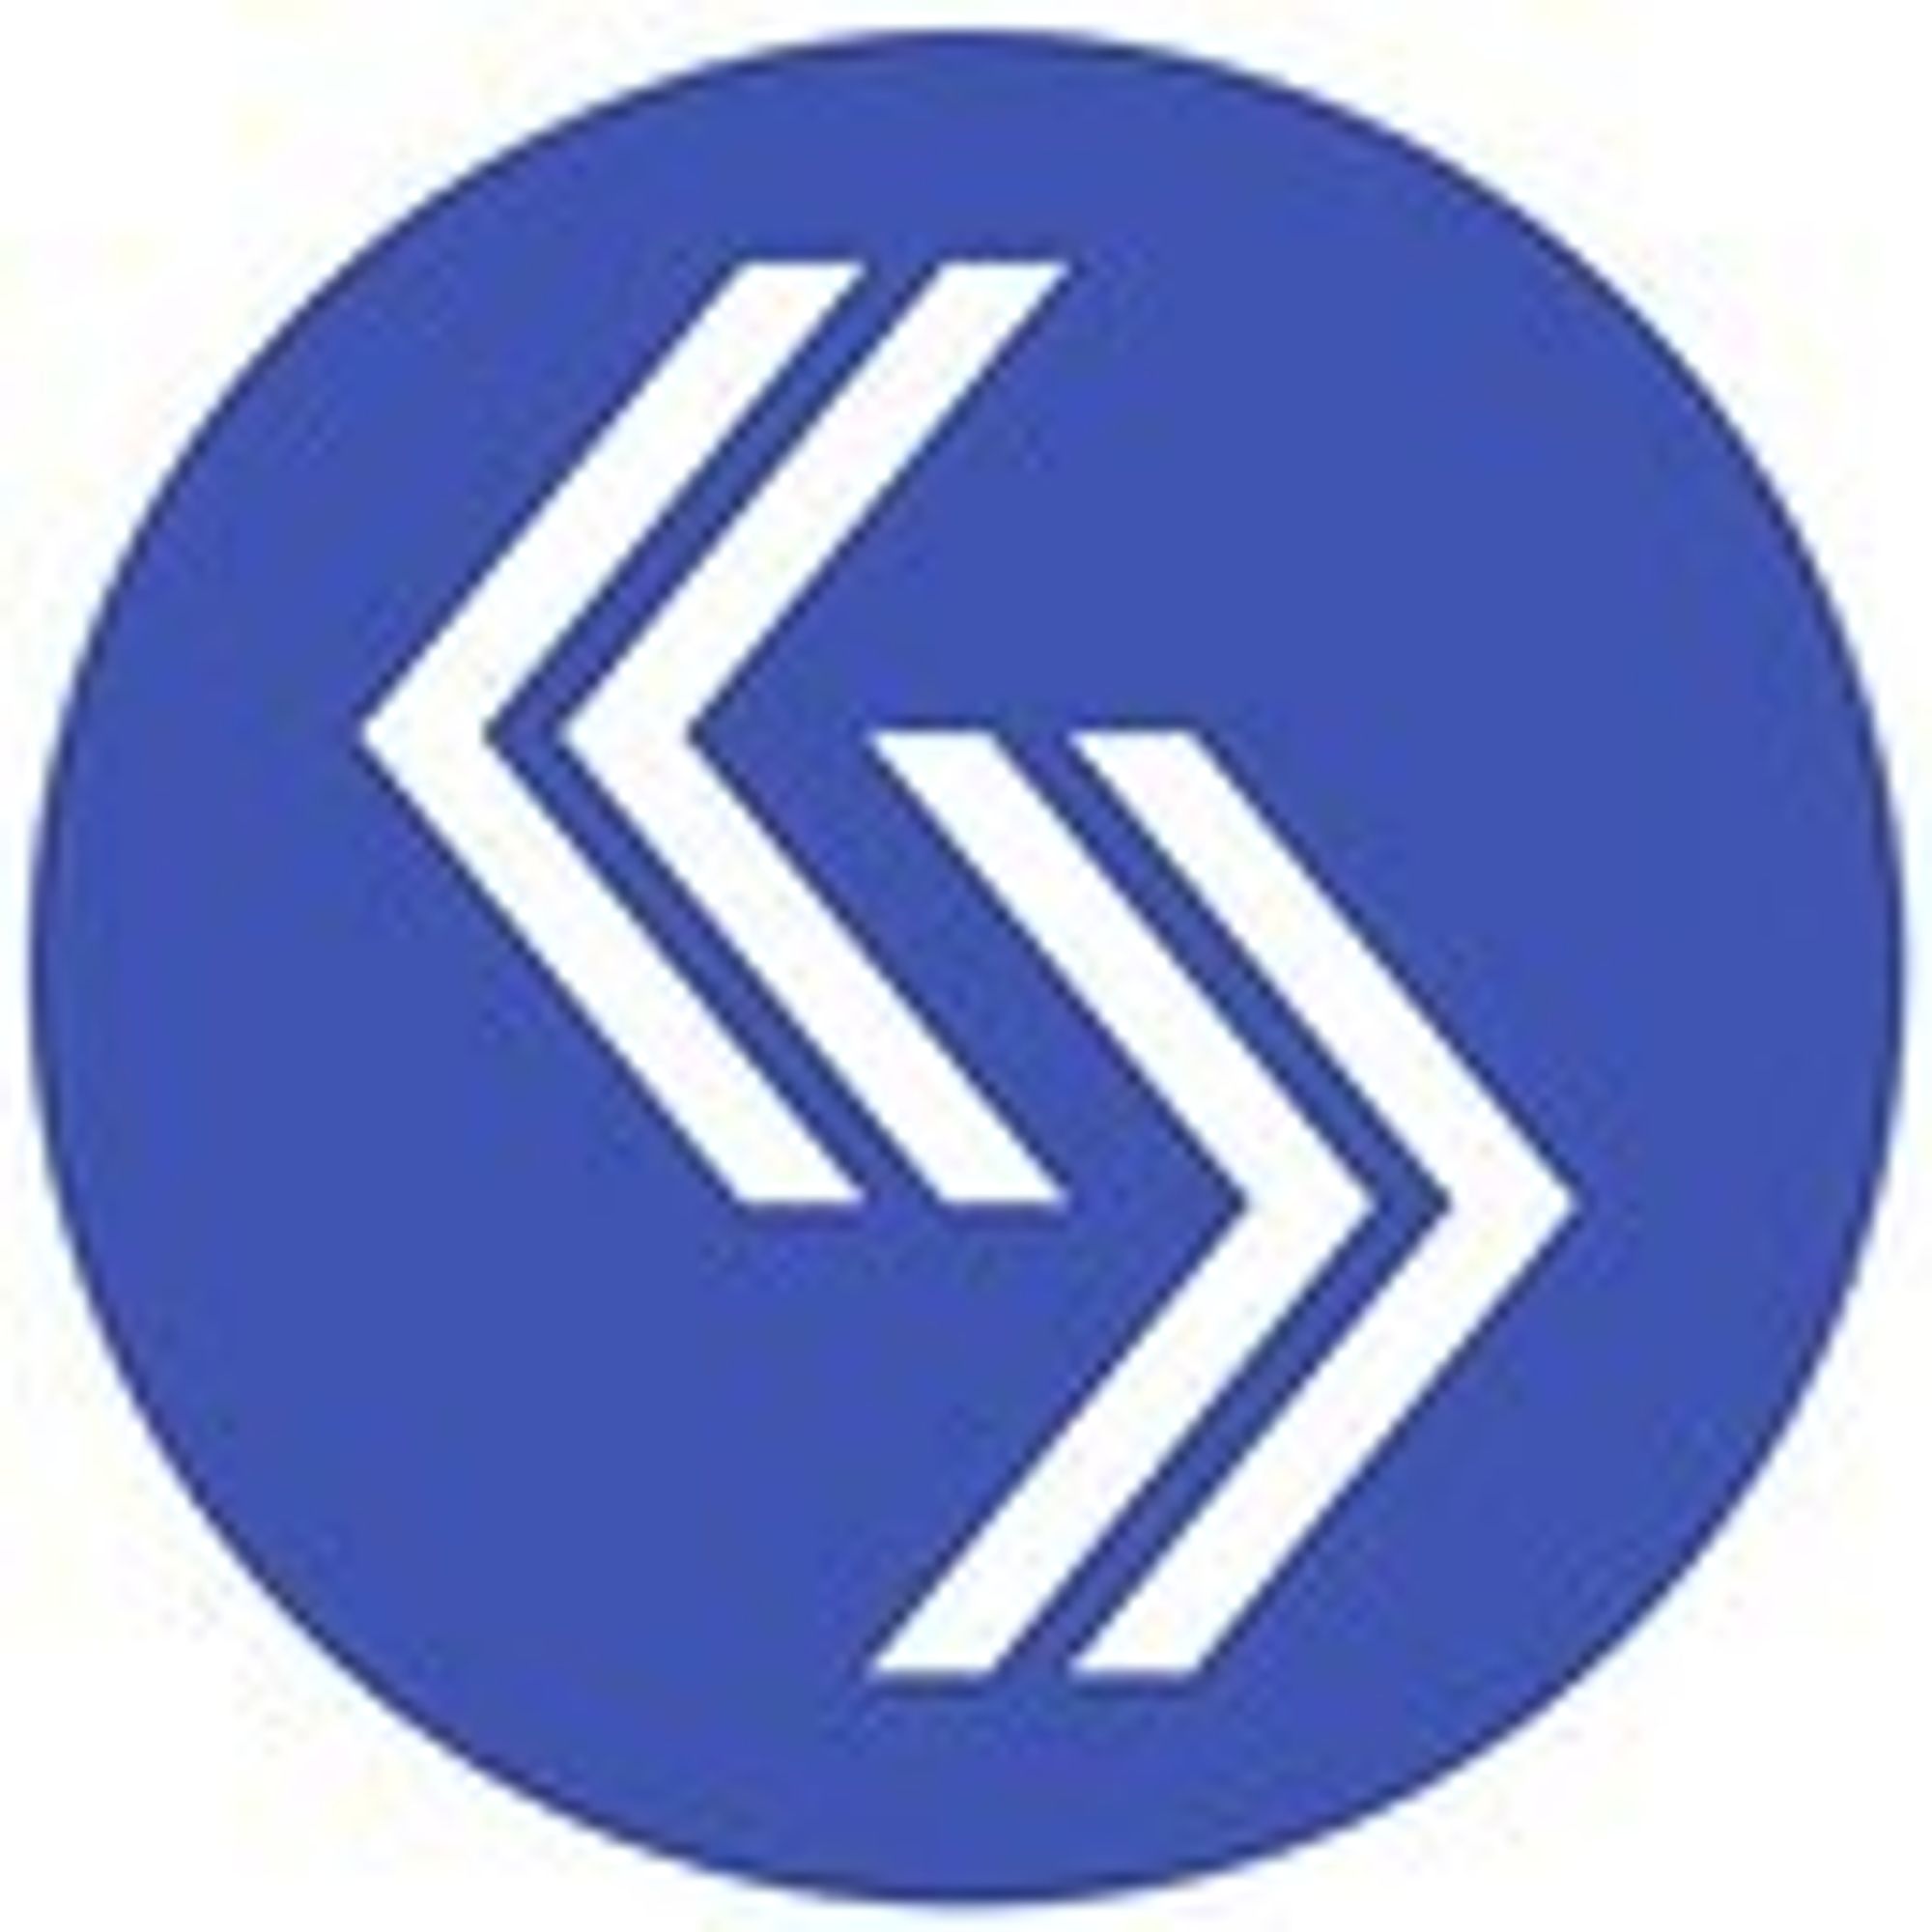 sroi-logo.jpg